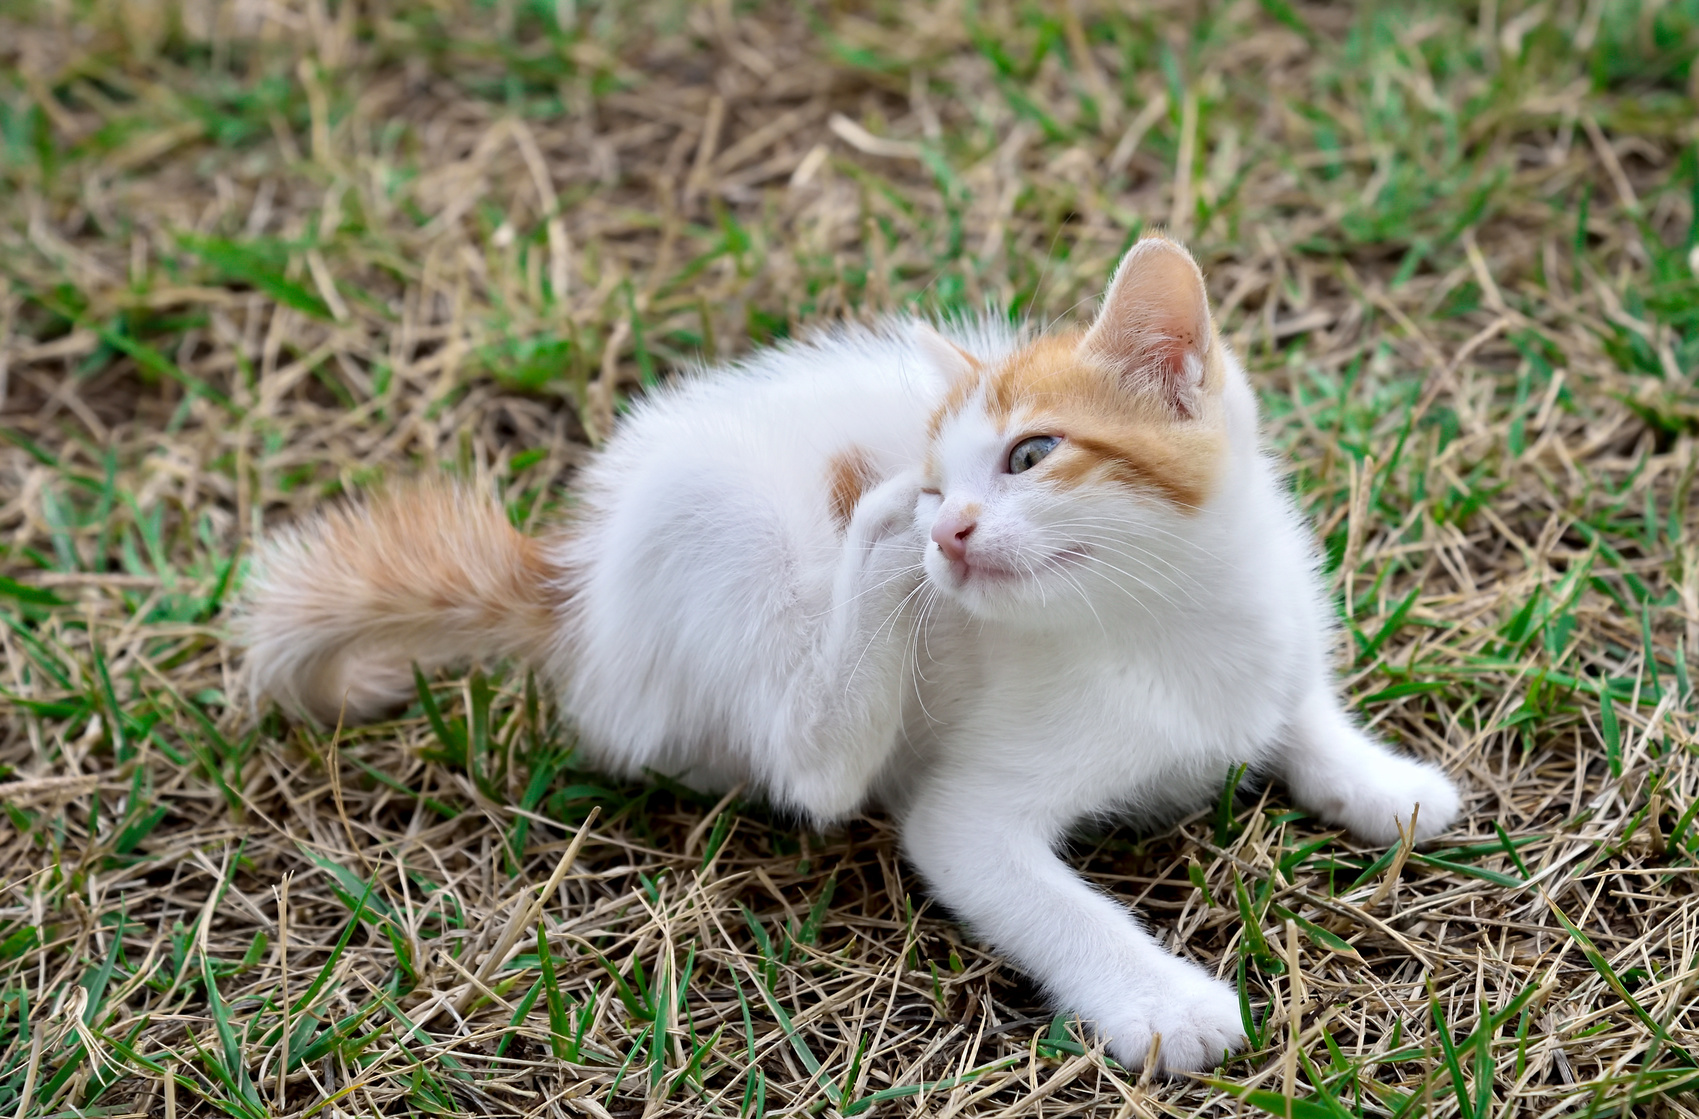 Kořní nemoci koček se projevují nadměrným škrábáním